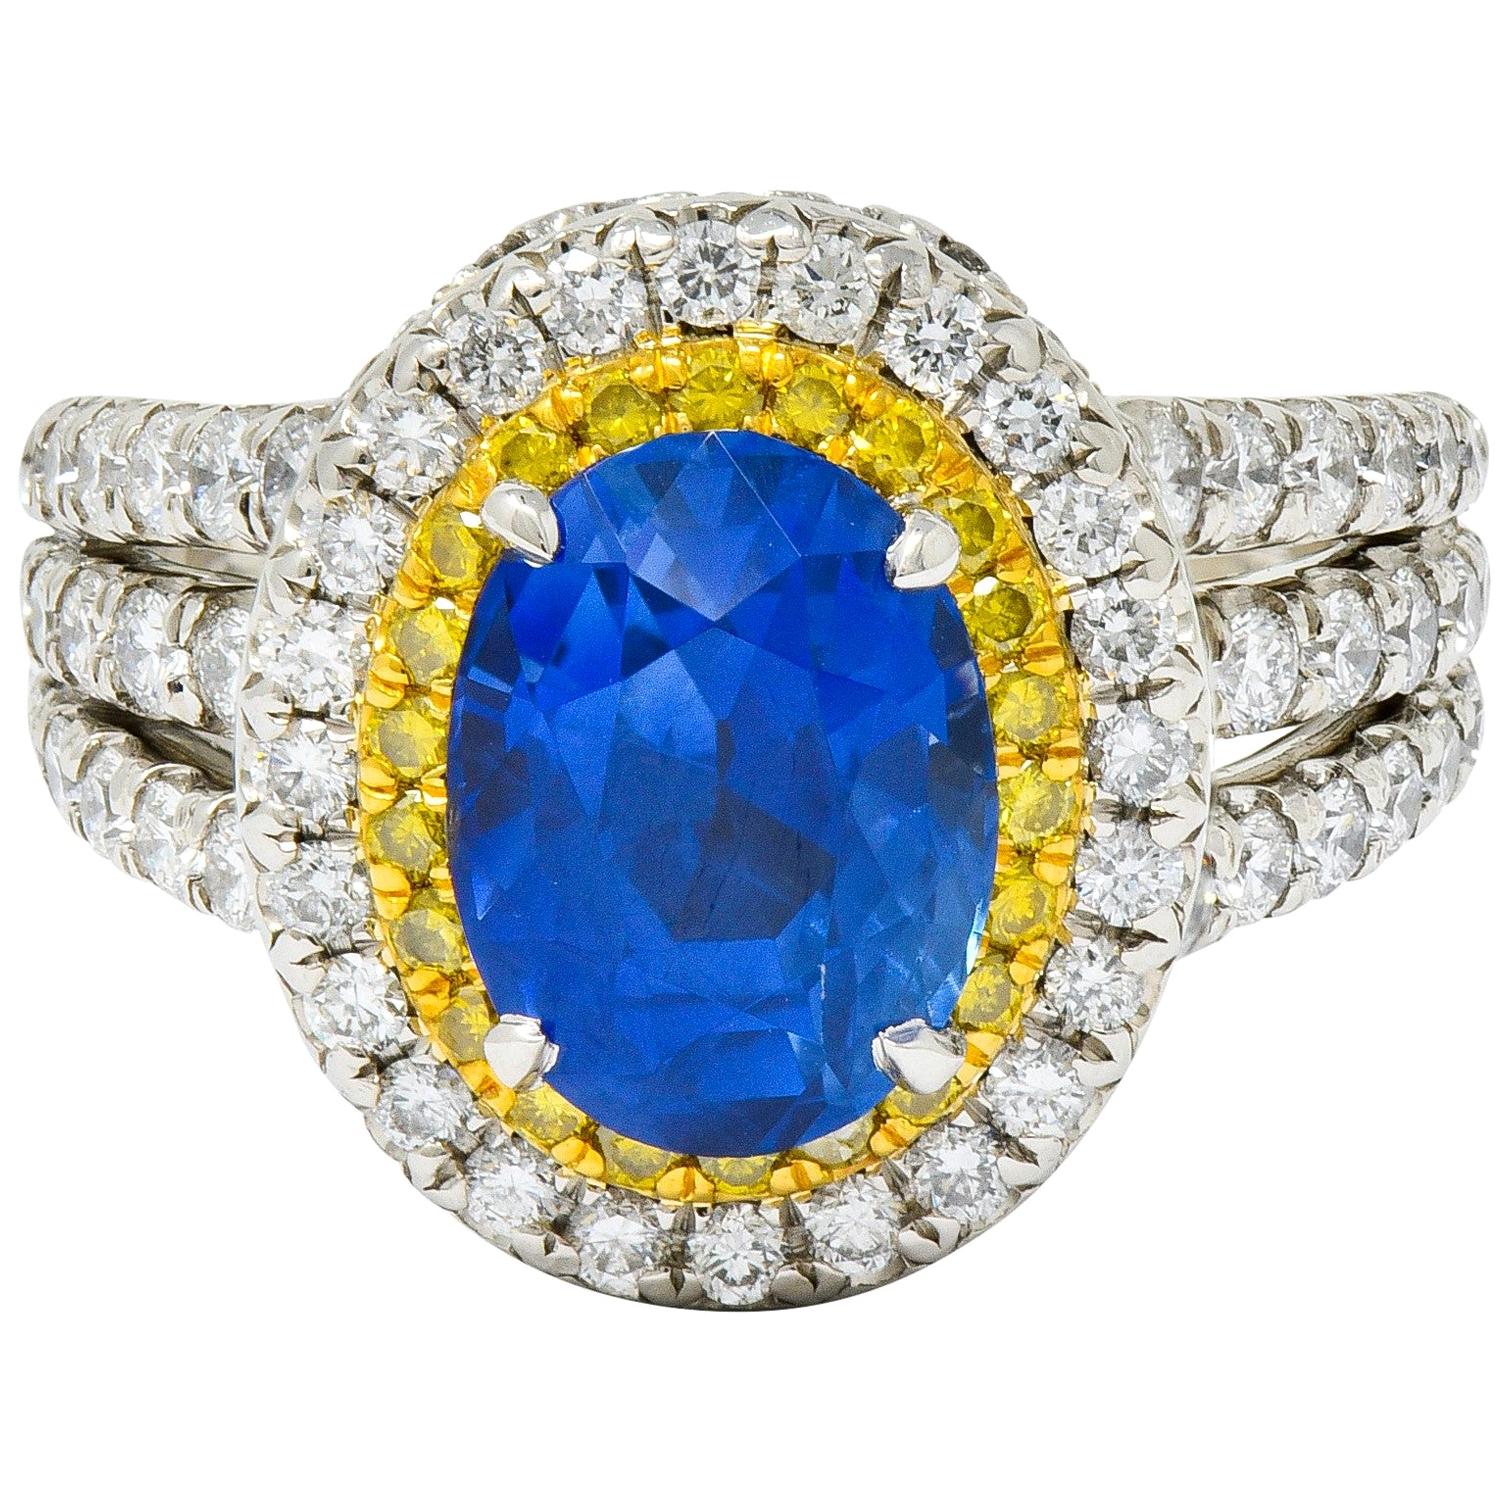 Charles Krypell No Heat Ceylon Sapphire White Fancy Yellow Diamond Platinum Ring